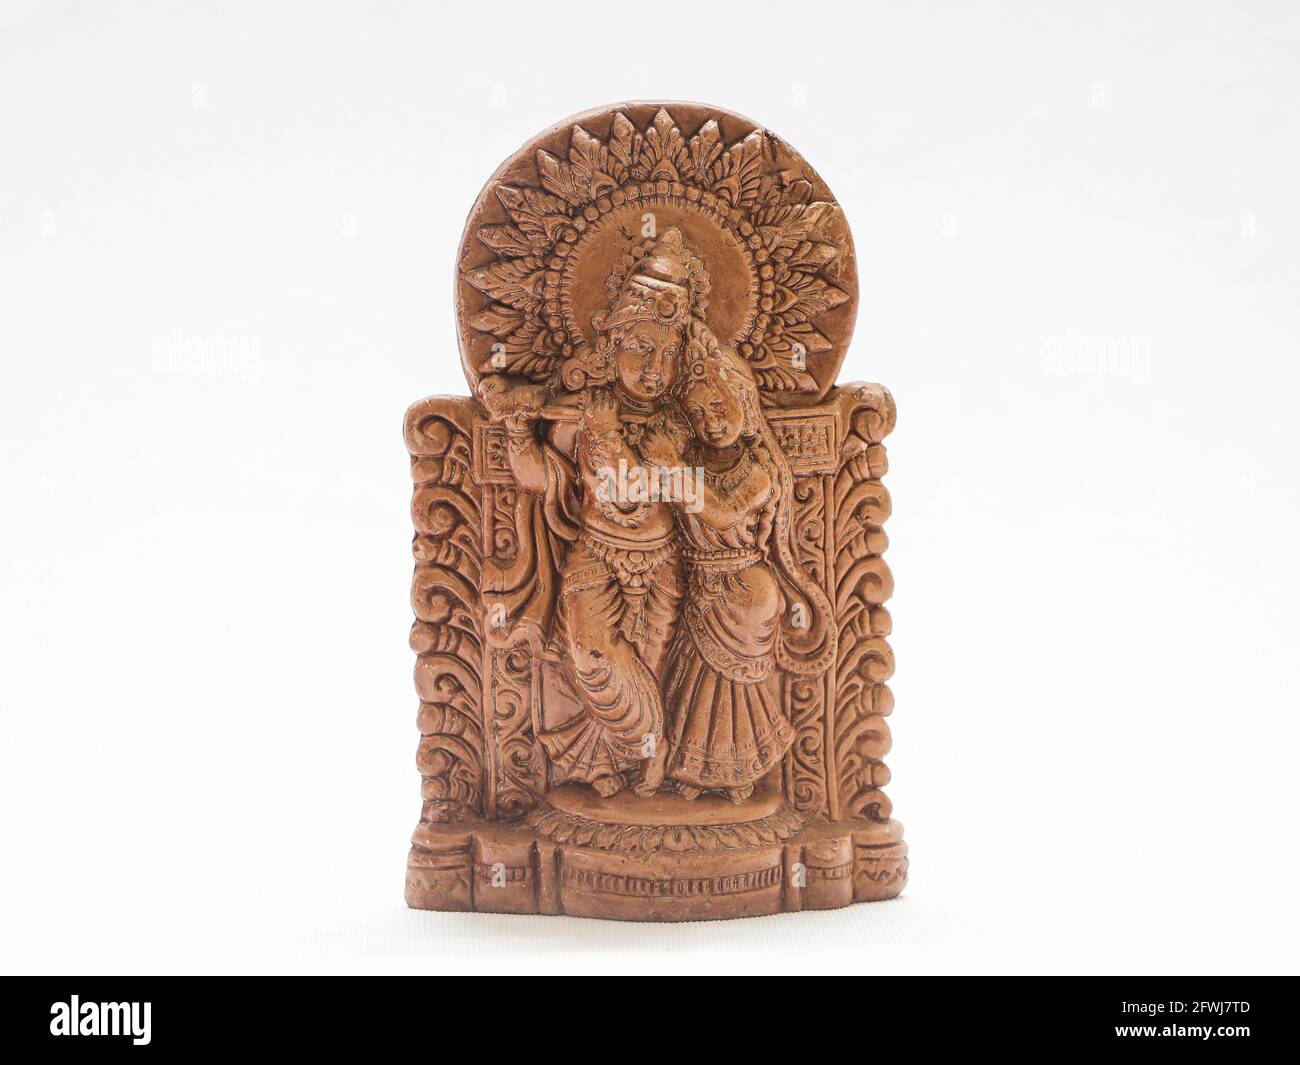 el dios hindú señor krishna y radha tradicional madera marrón antigua escultura Foto de stock